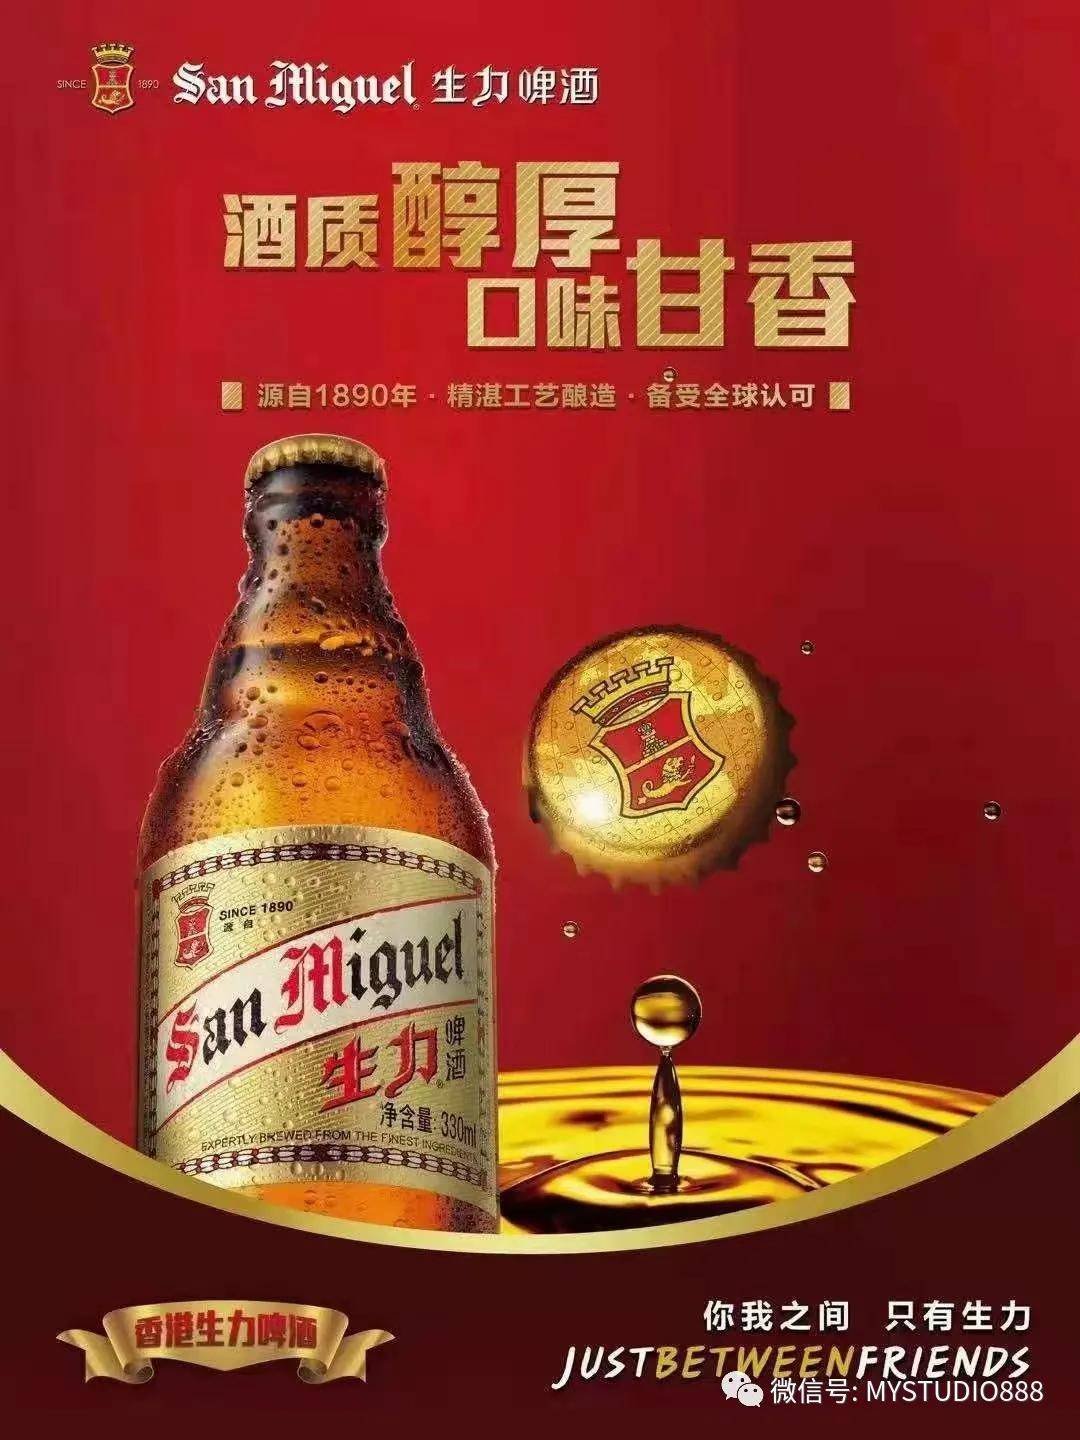 因为家在香港的缘故,所以,有缘经常接触到生力啤酒.